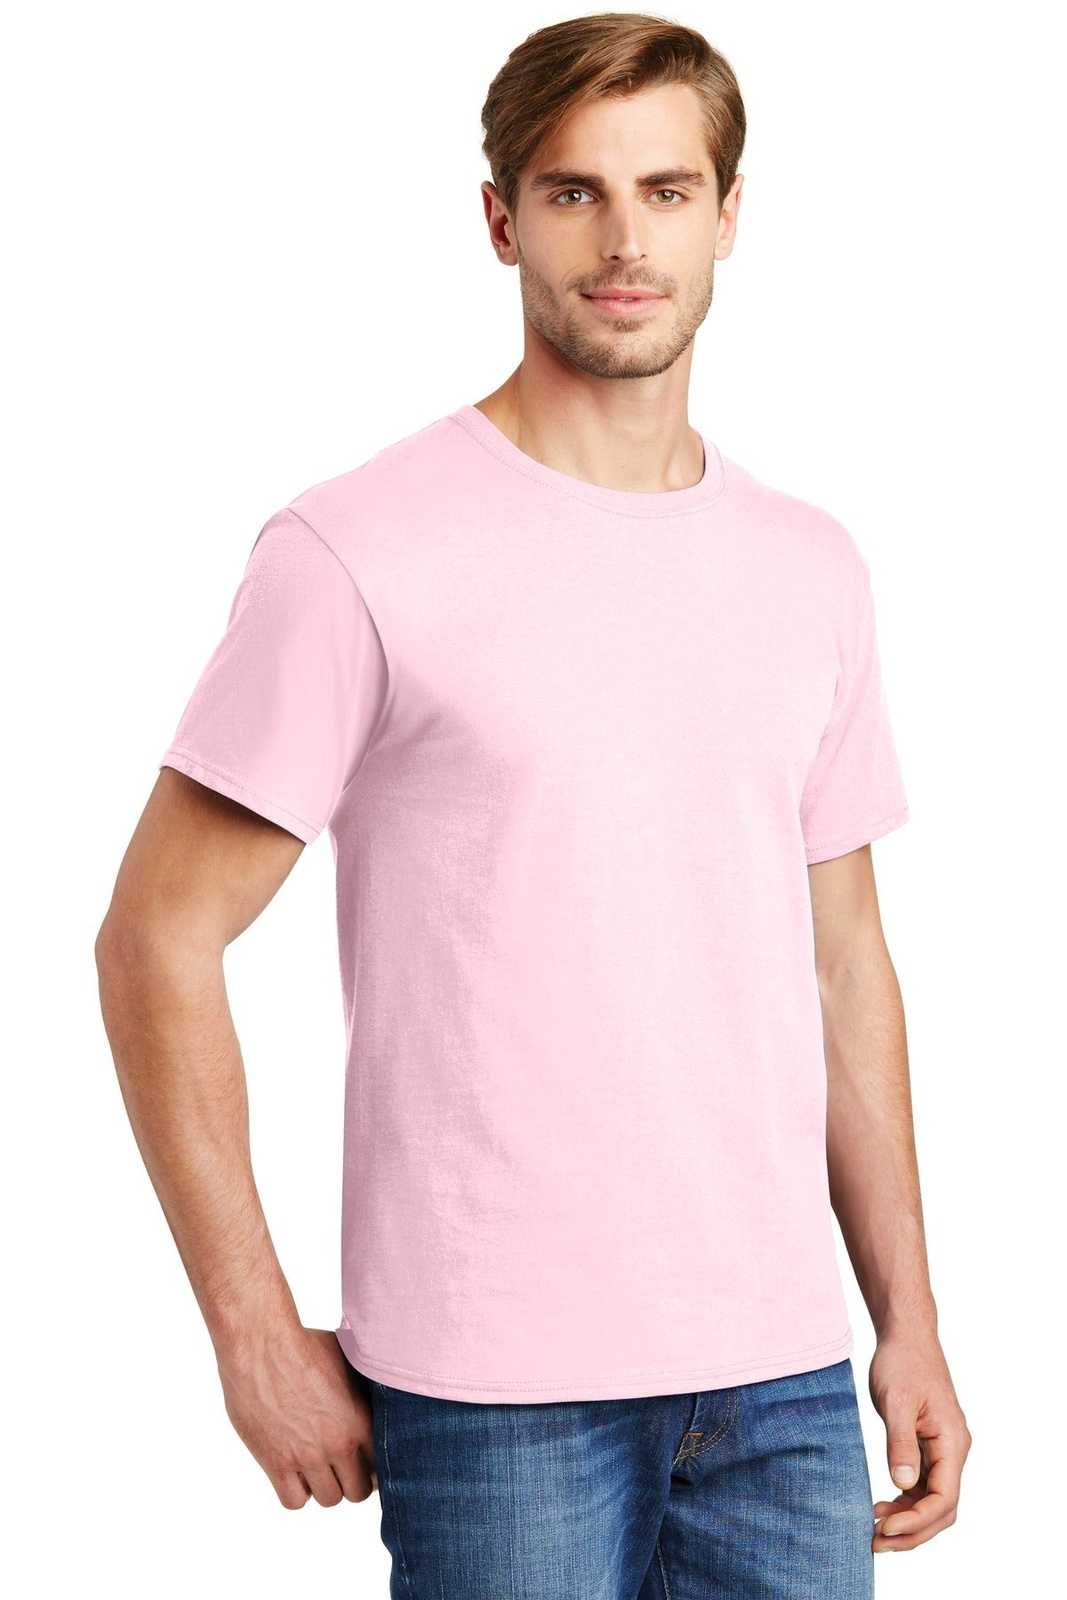 Hanes 5280 Comfortsoft 100% Cotton T-Shirt - Pale Pink - HIT a Double